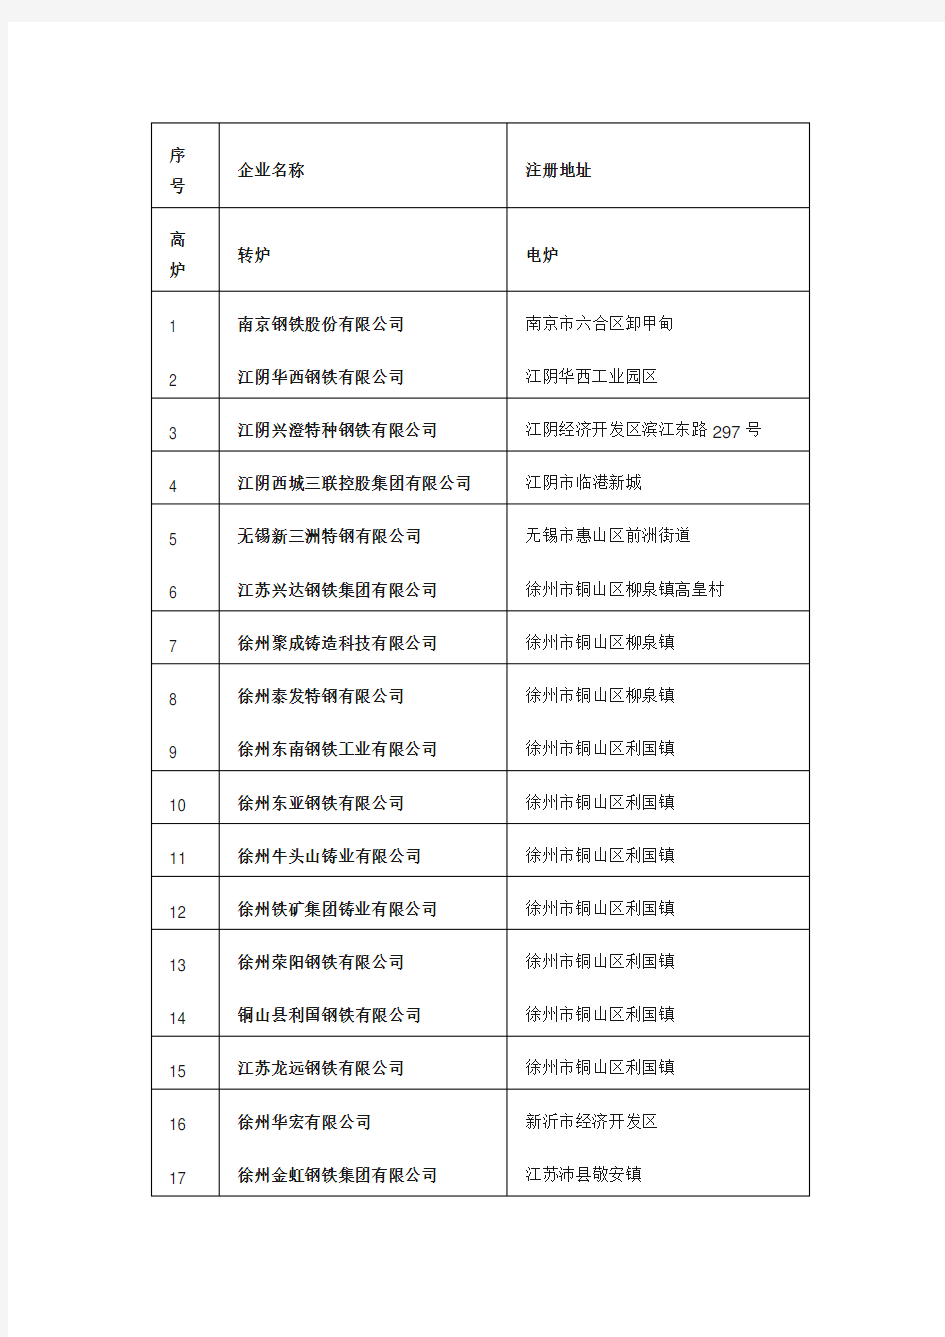 江苏省钢铁企业名单